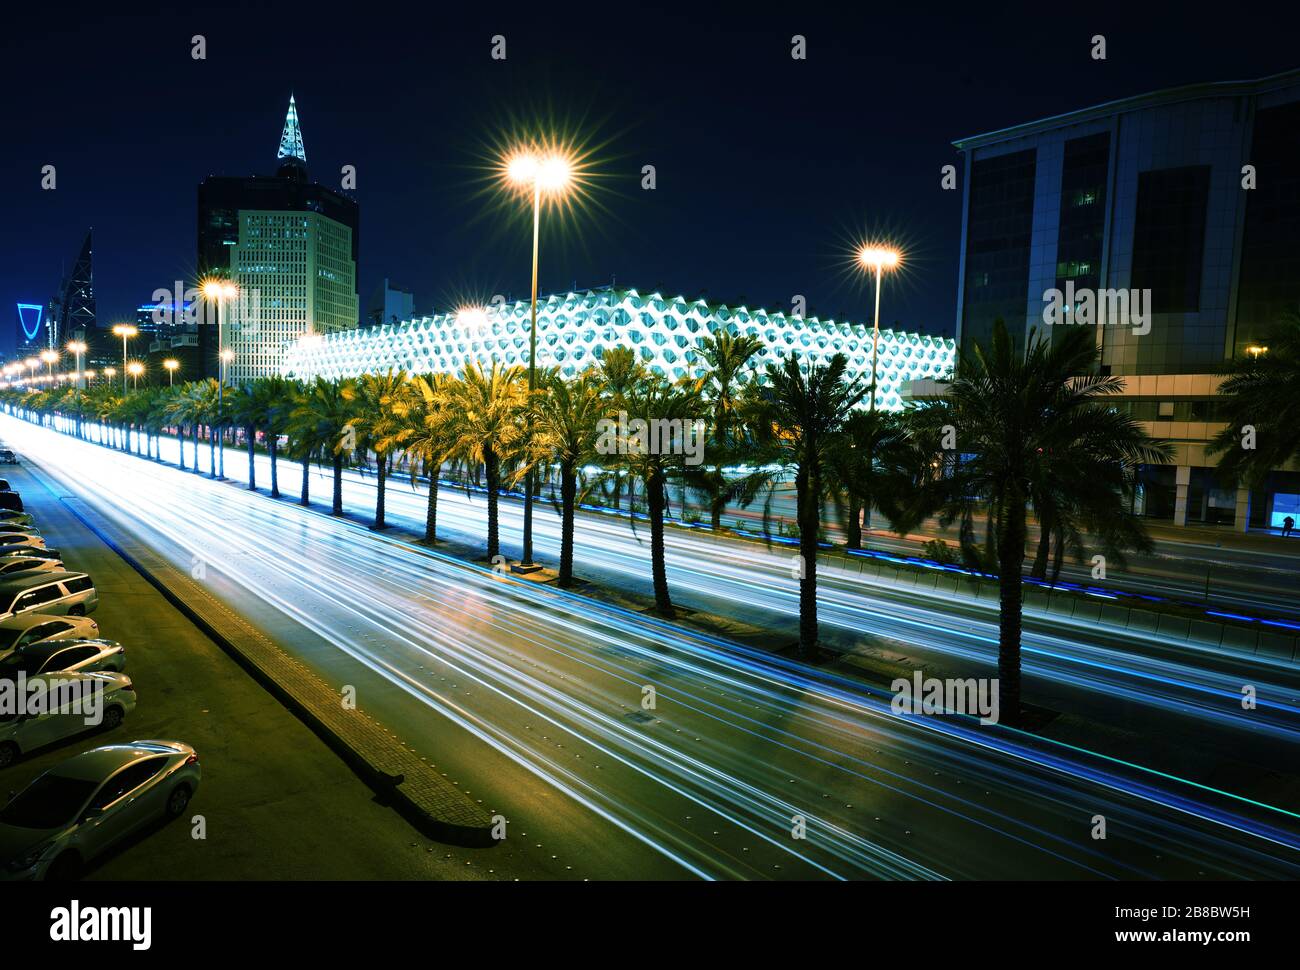 Riyadh - Riyadh / Saudi Arabia - March 05  2020: Perspective view of the King Fahad National Library Stock Photo